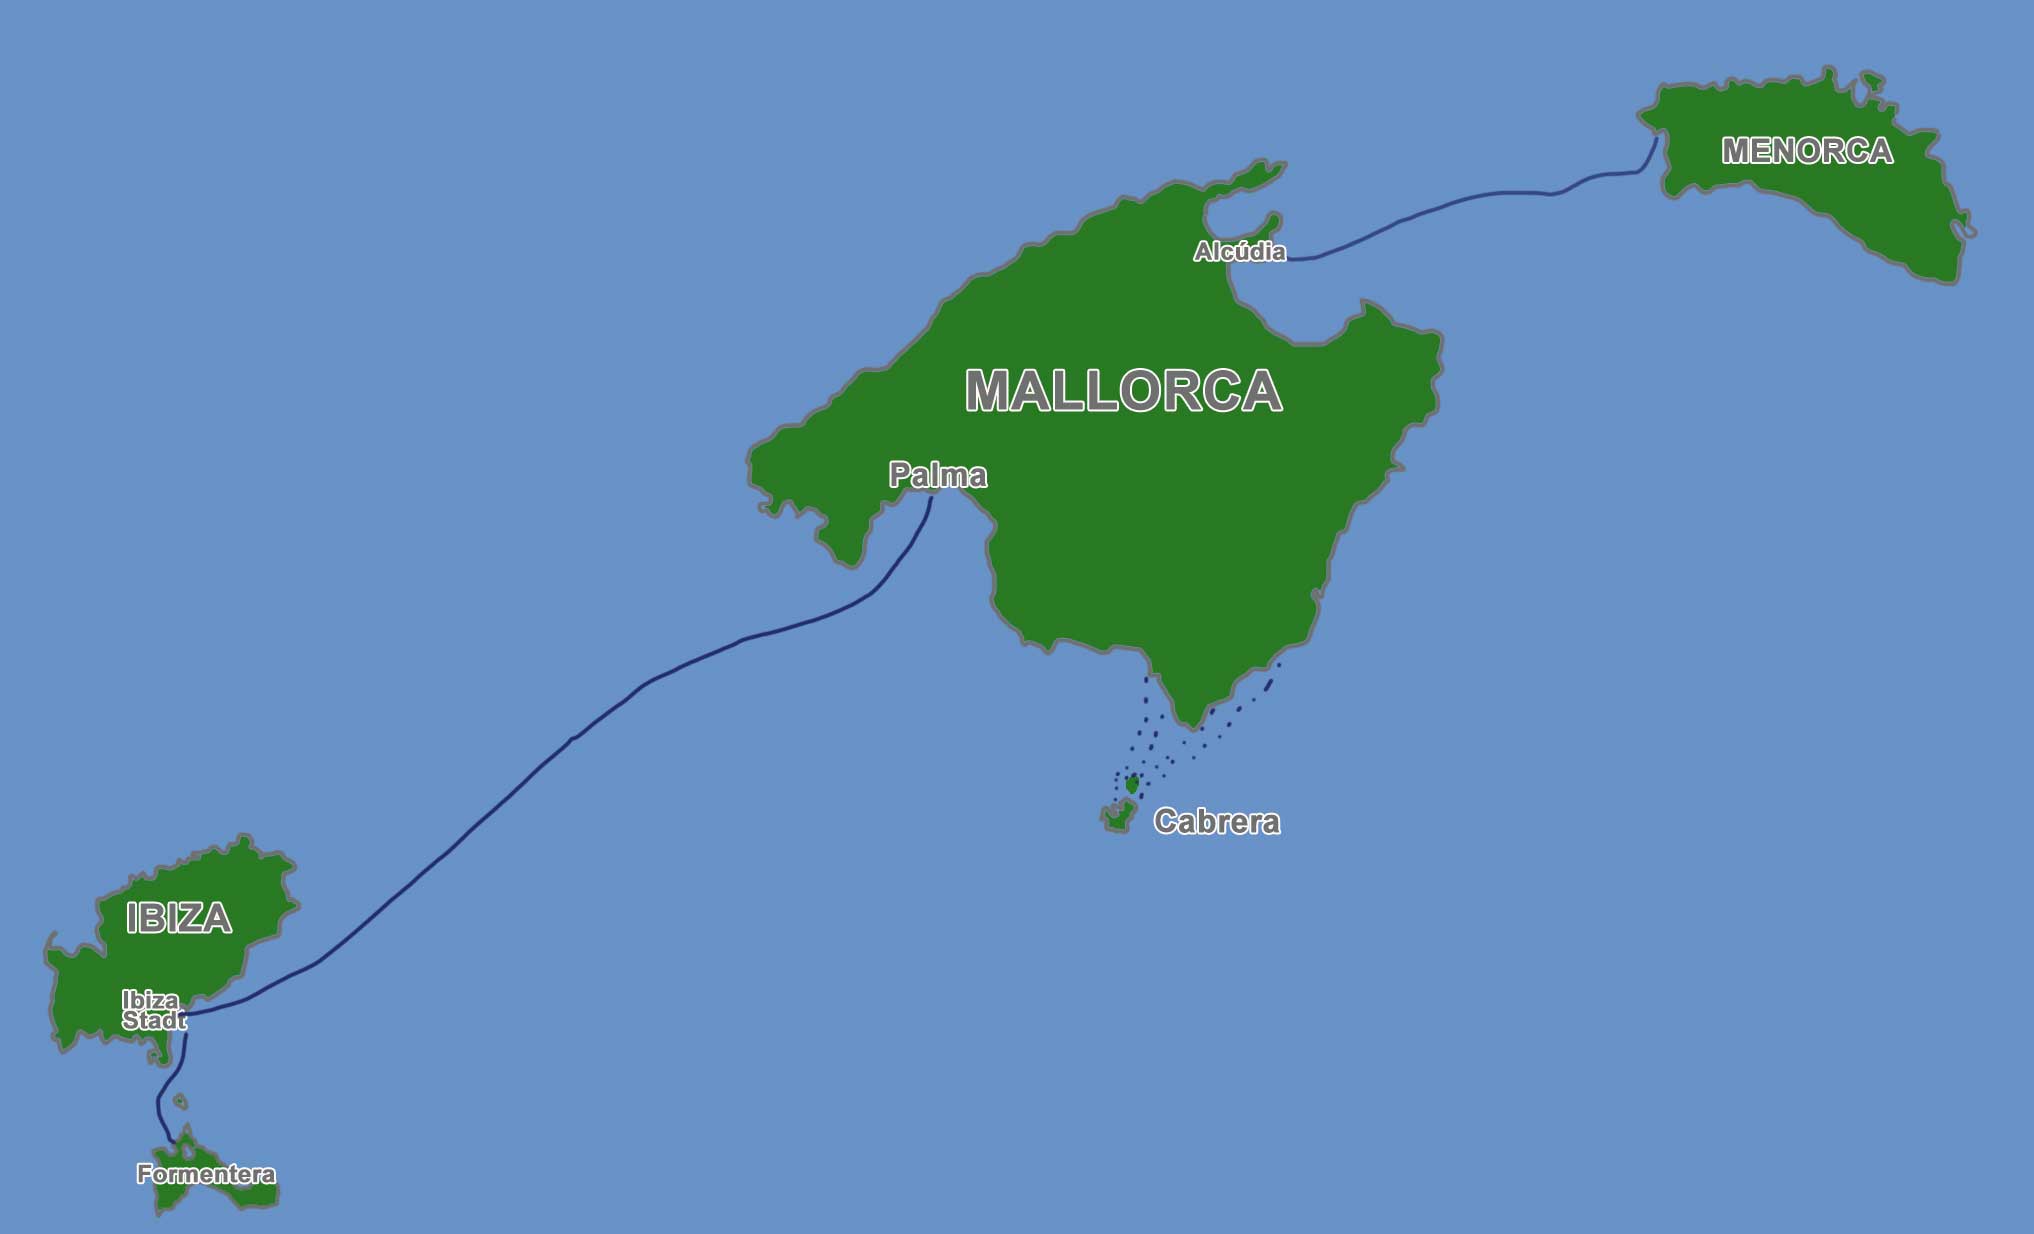 Inselhopping Mallorca, Ibiza, Formentera, Menorca und Cabrera